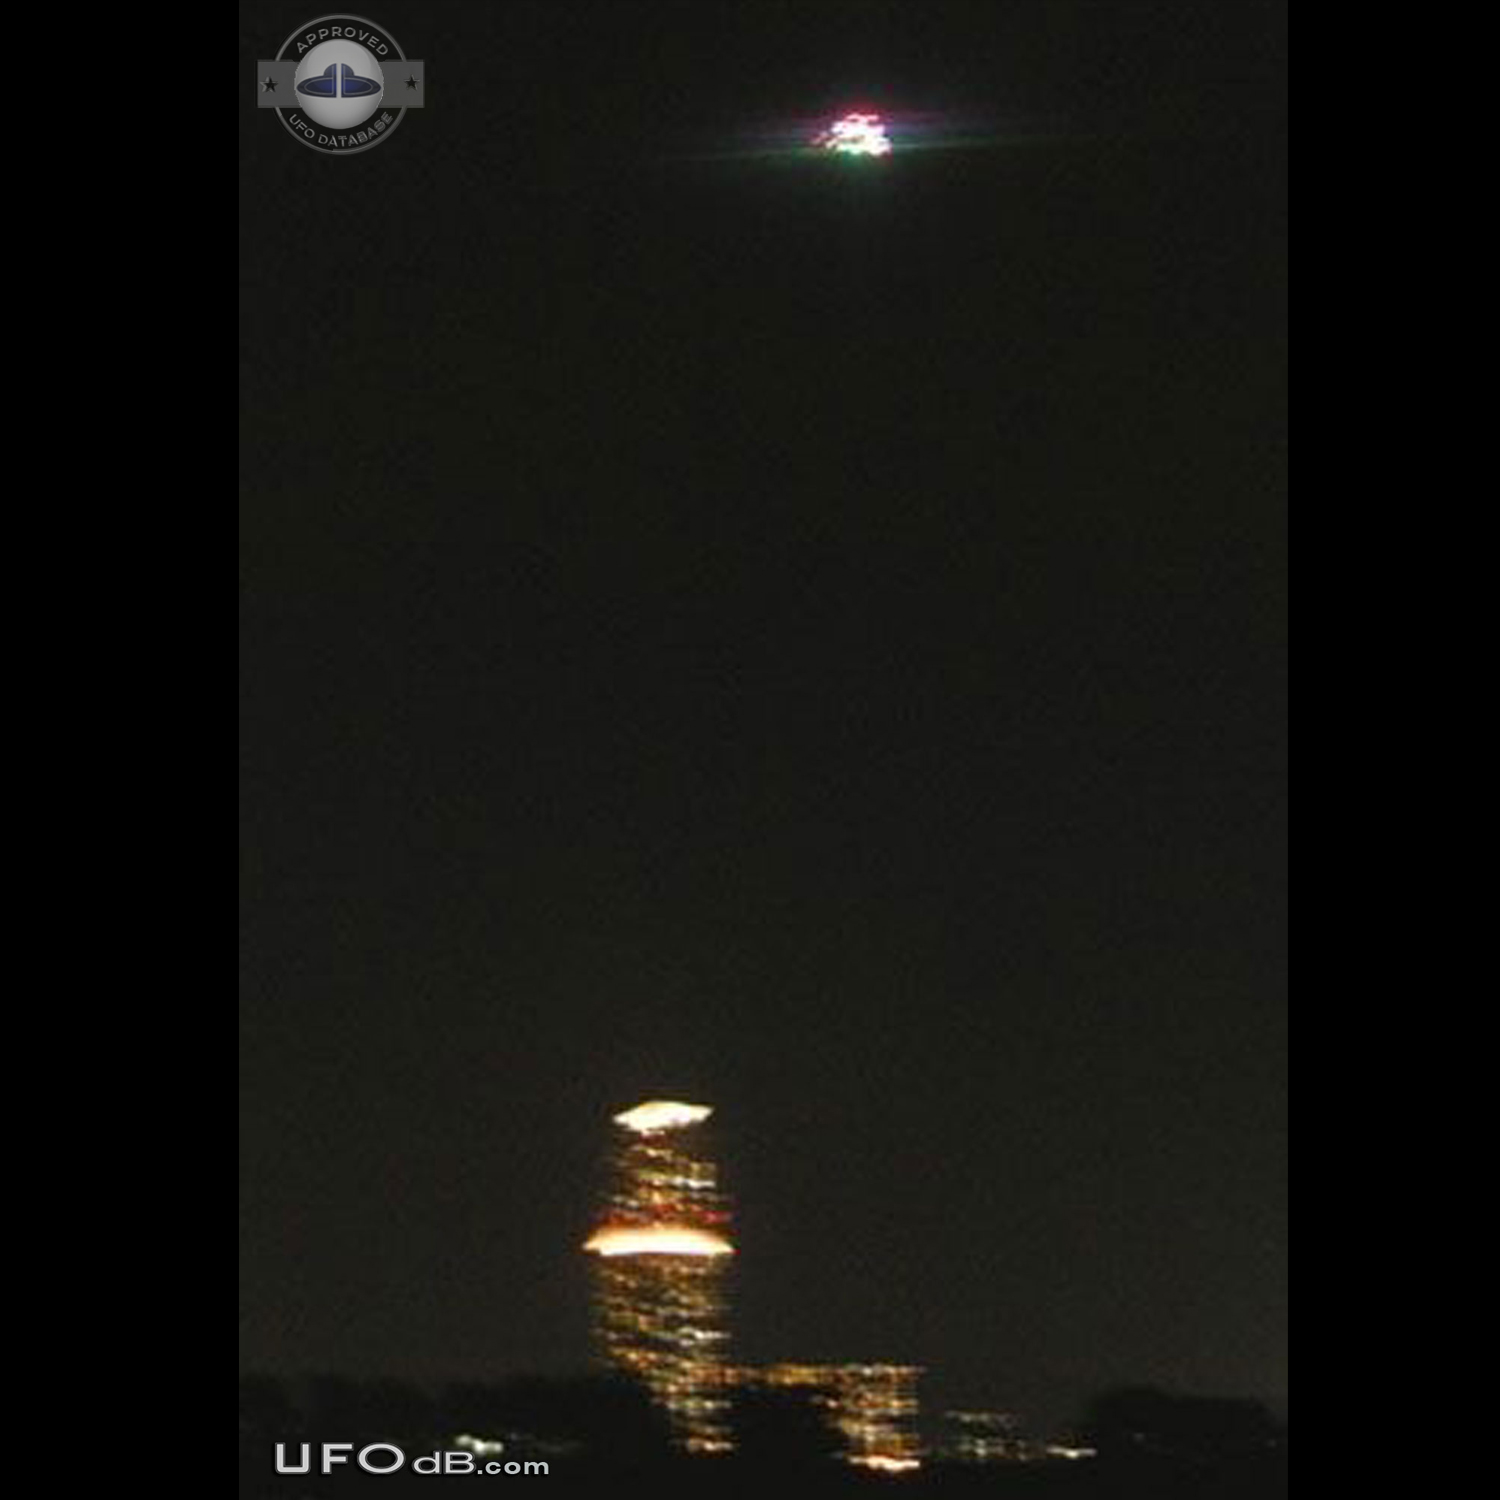 Mass UFO sightings of a Fleet of UFOs pass over Izumi Osaka Japan 2012 UFO Picture #488-1